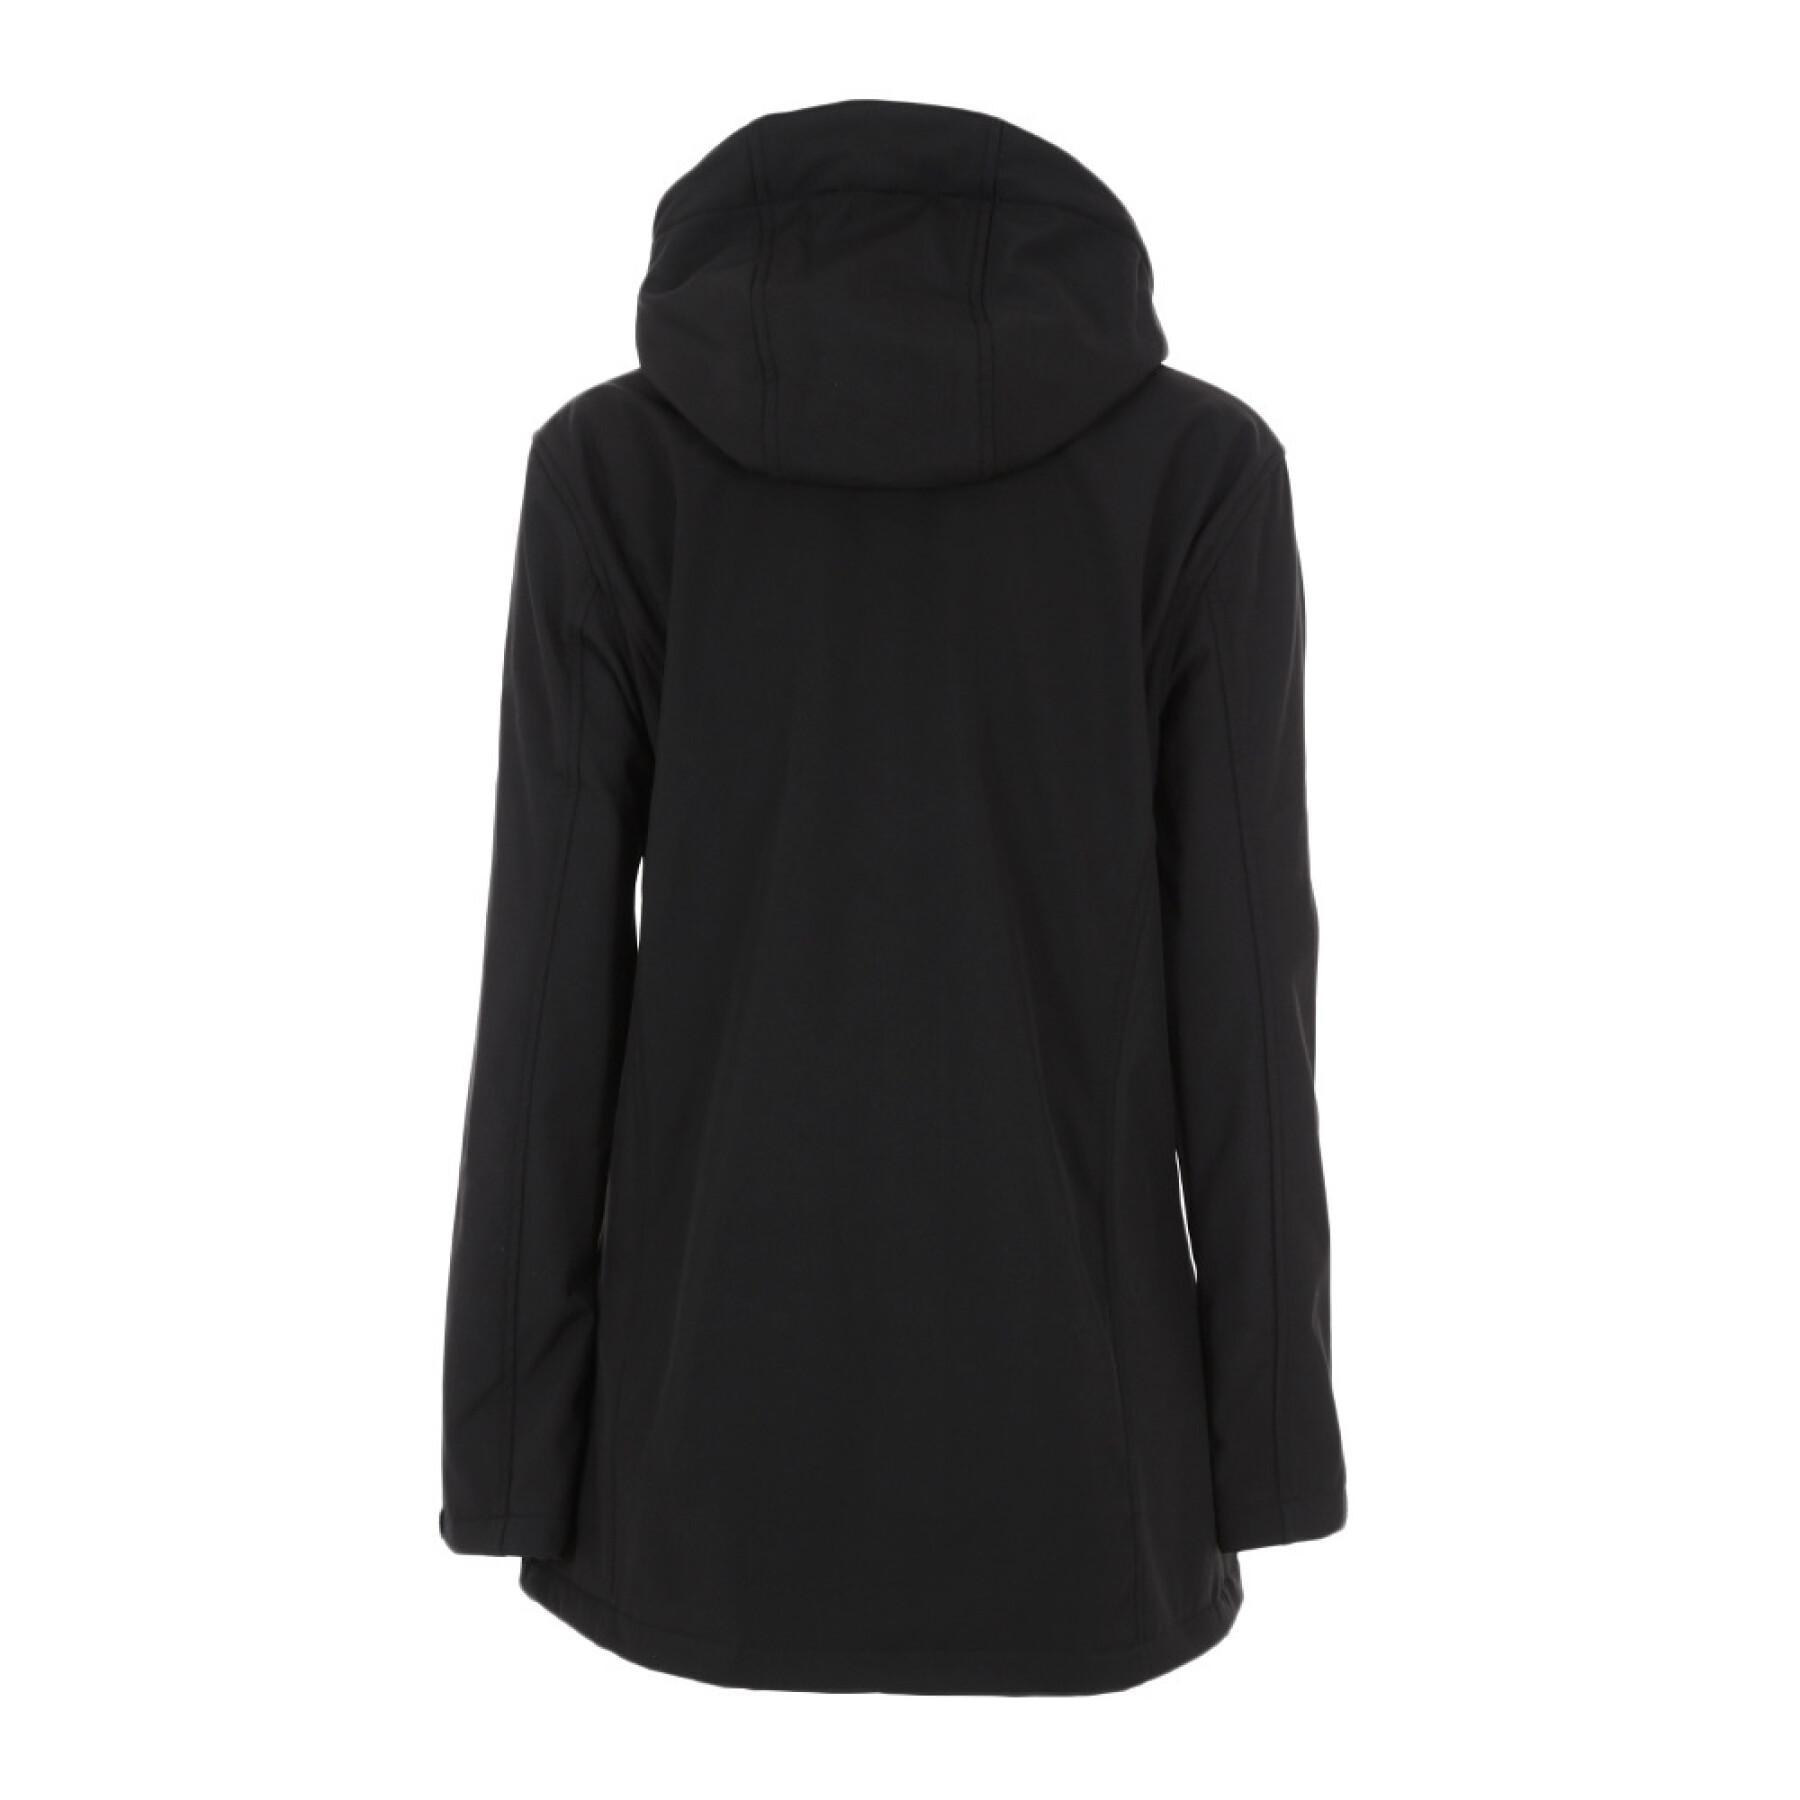 Softshell jacket for women Degré Celsius Acalmi